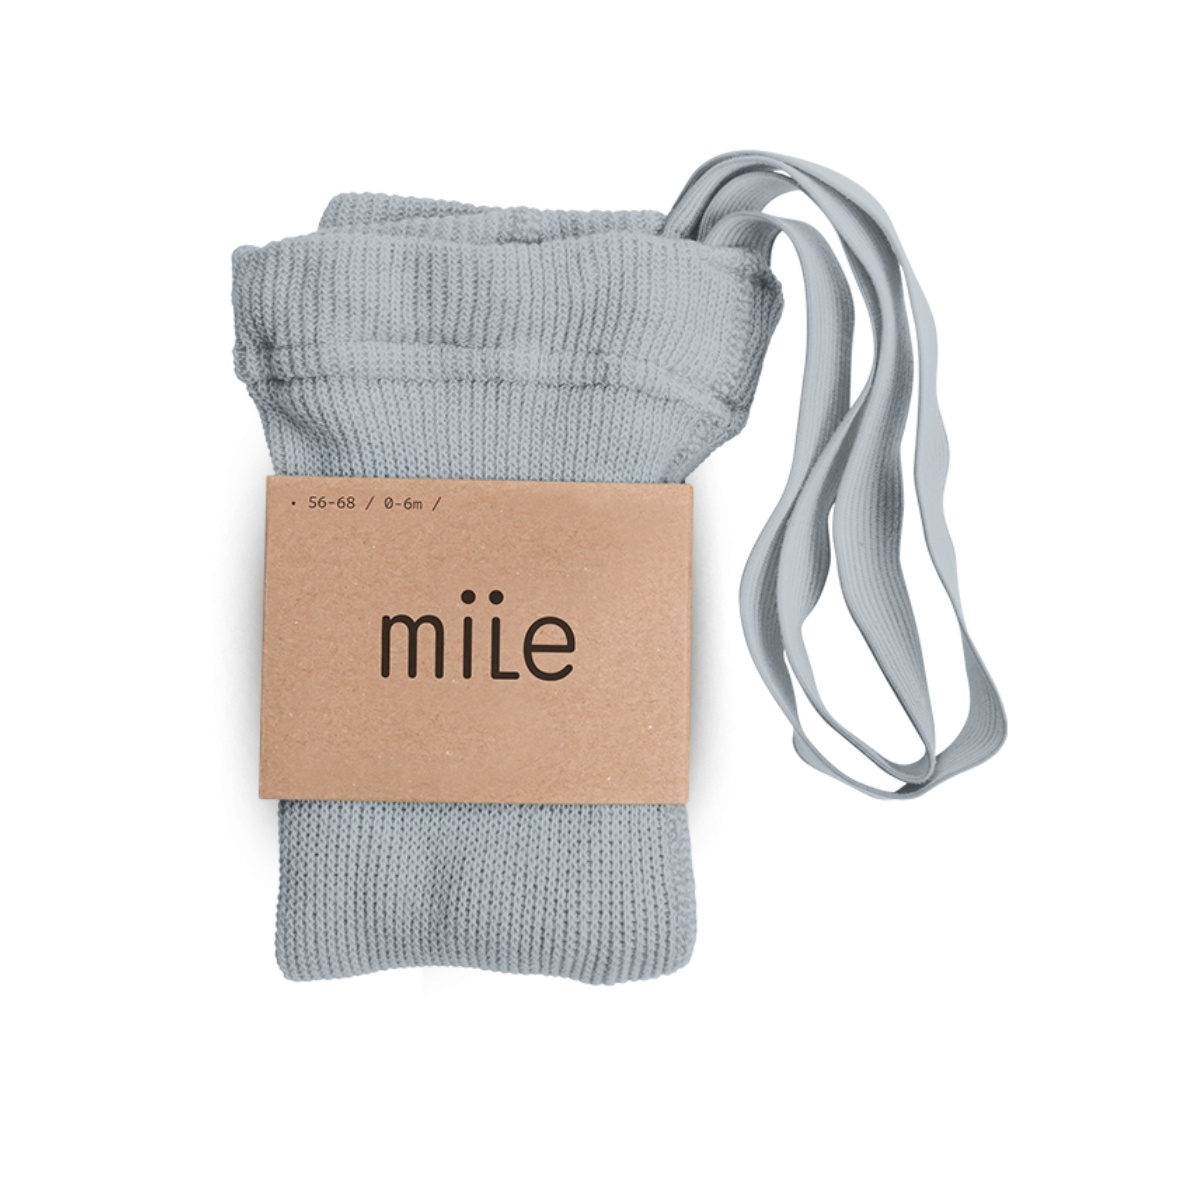 Mile - Cotton tights with braces grey - Strumpfhosen und Socken